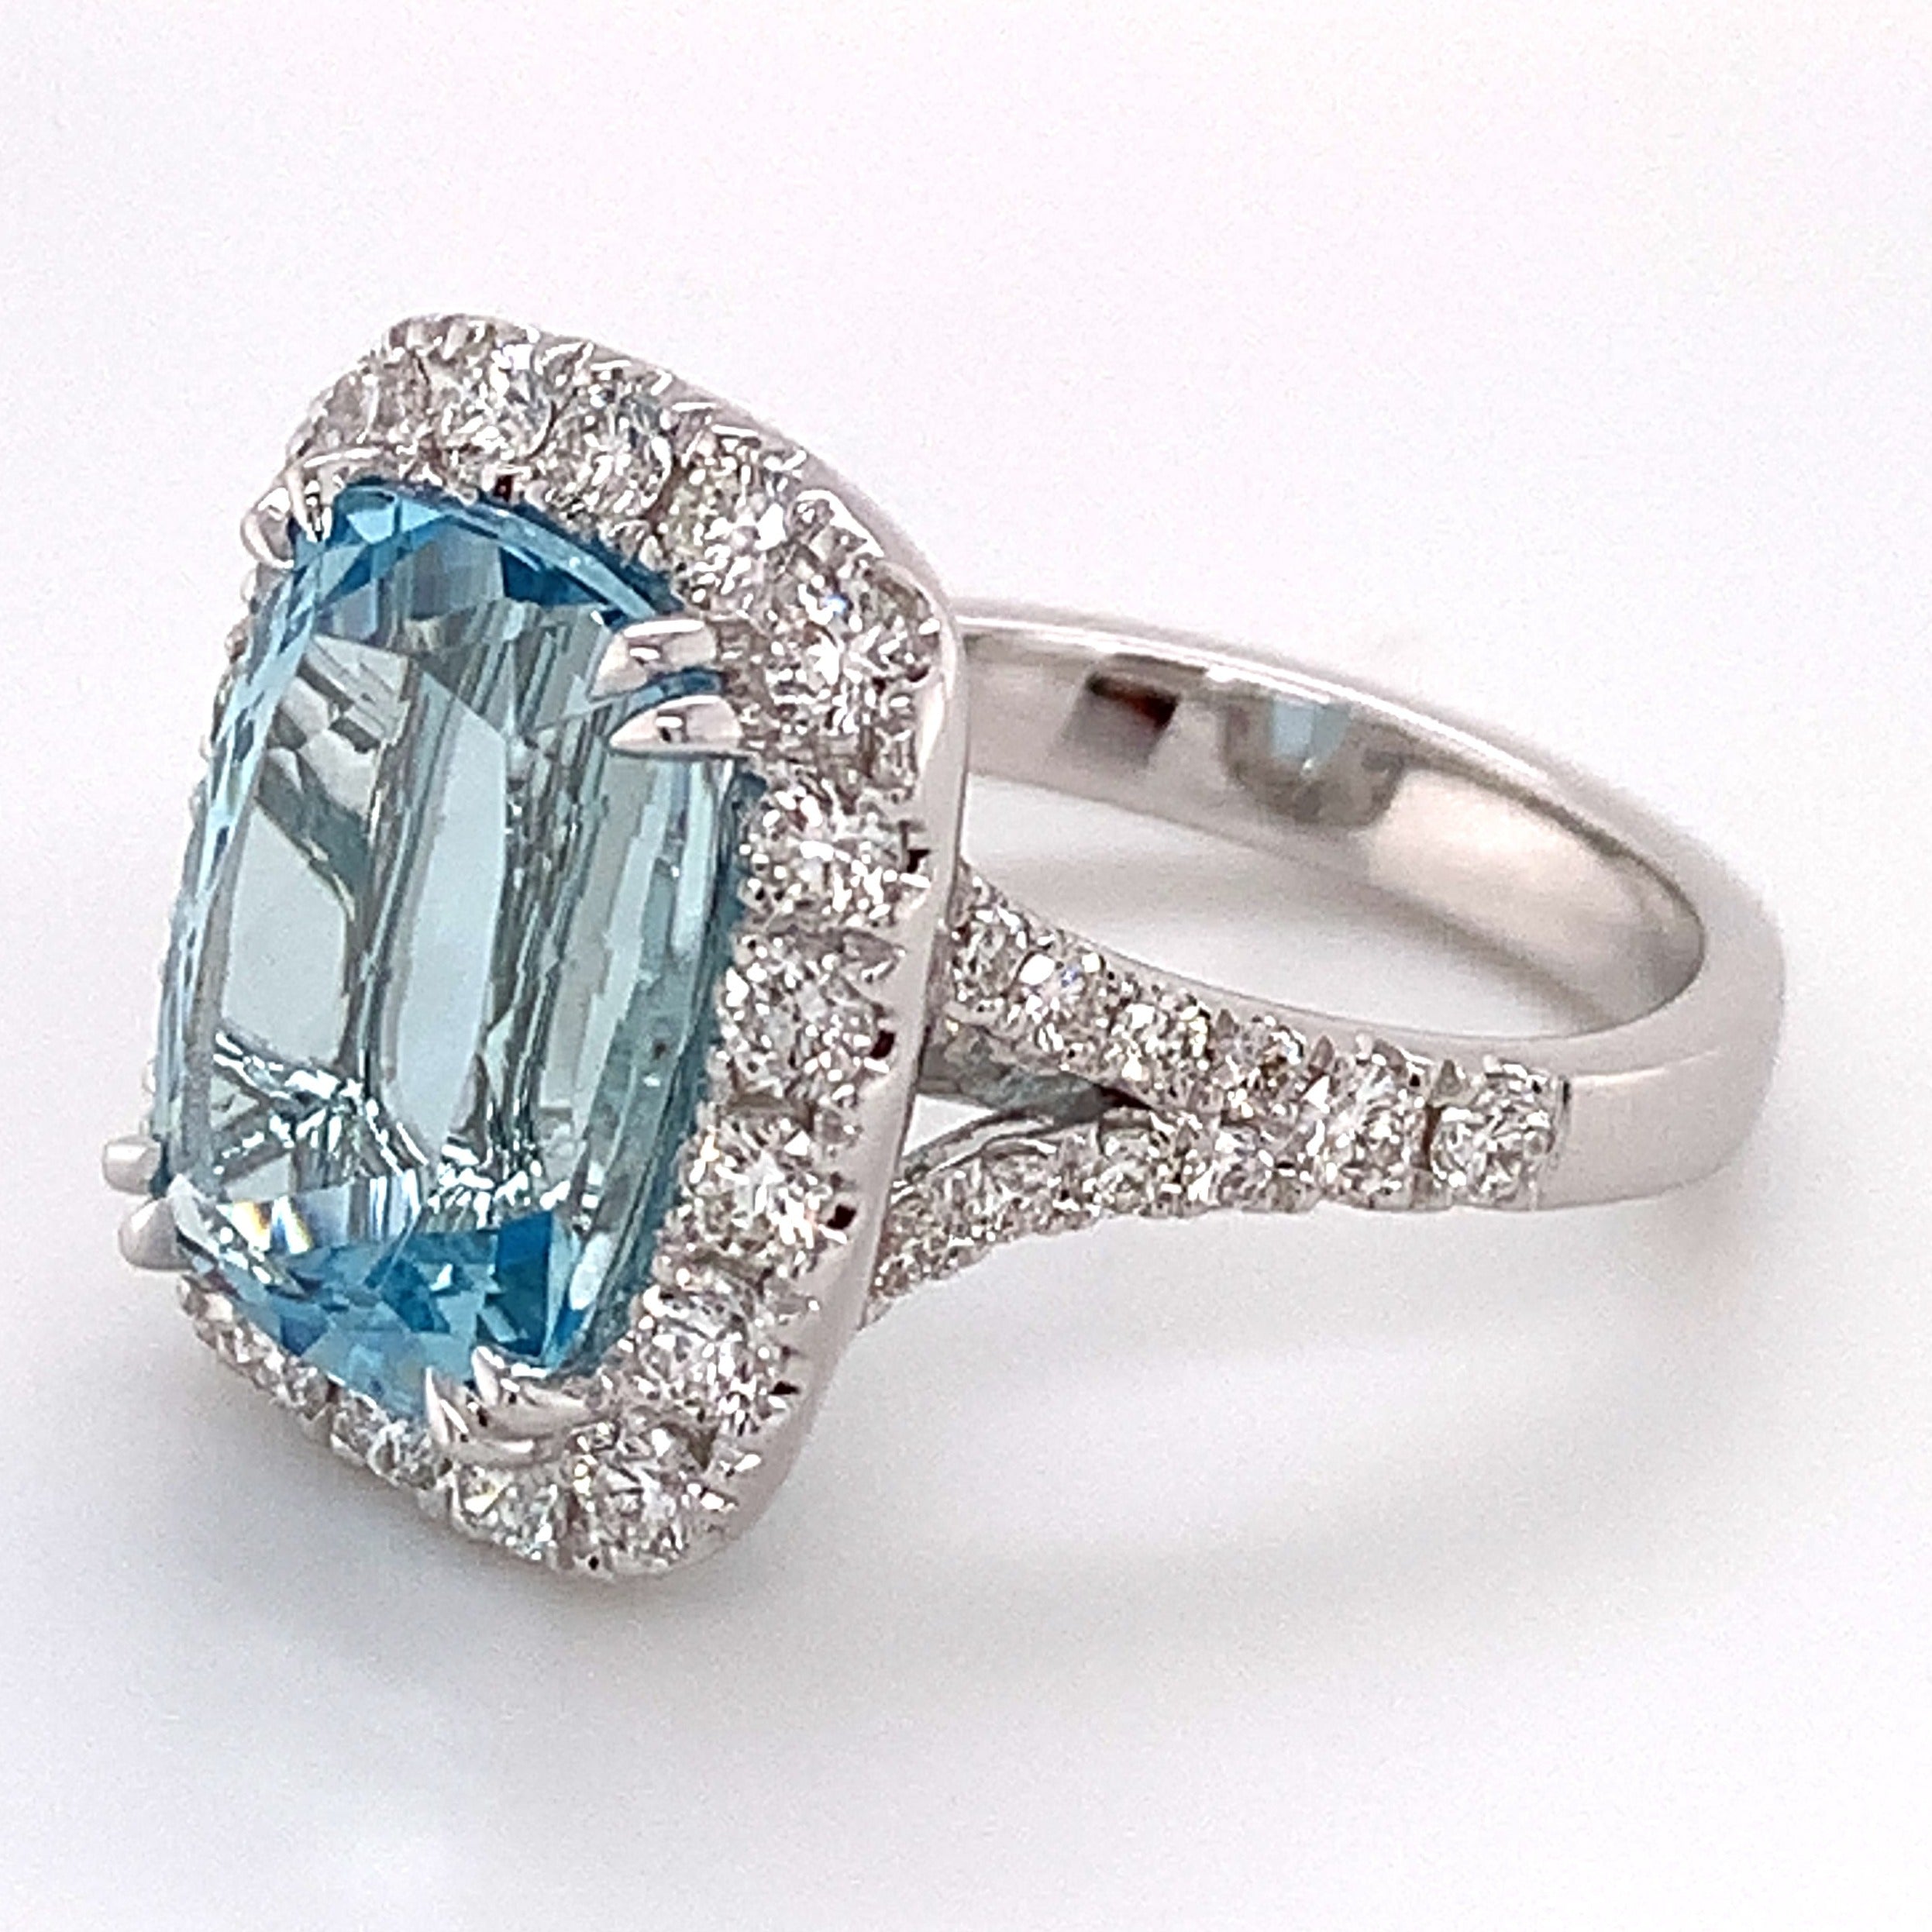 Spectacular 5.31ct Aquamarine & Diamond Cocktail Statement Ring